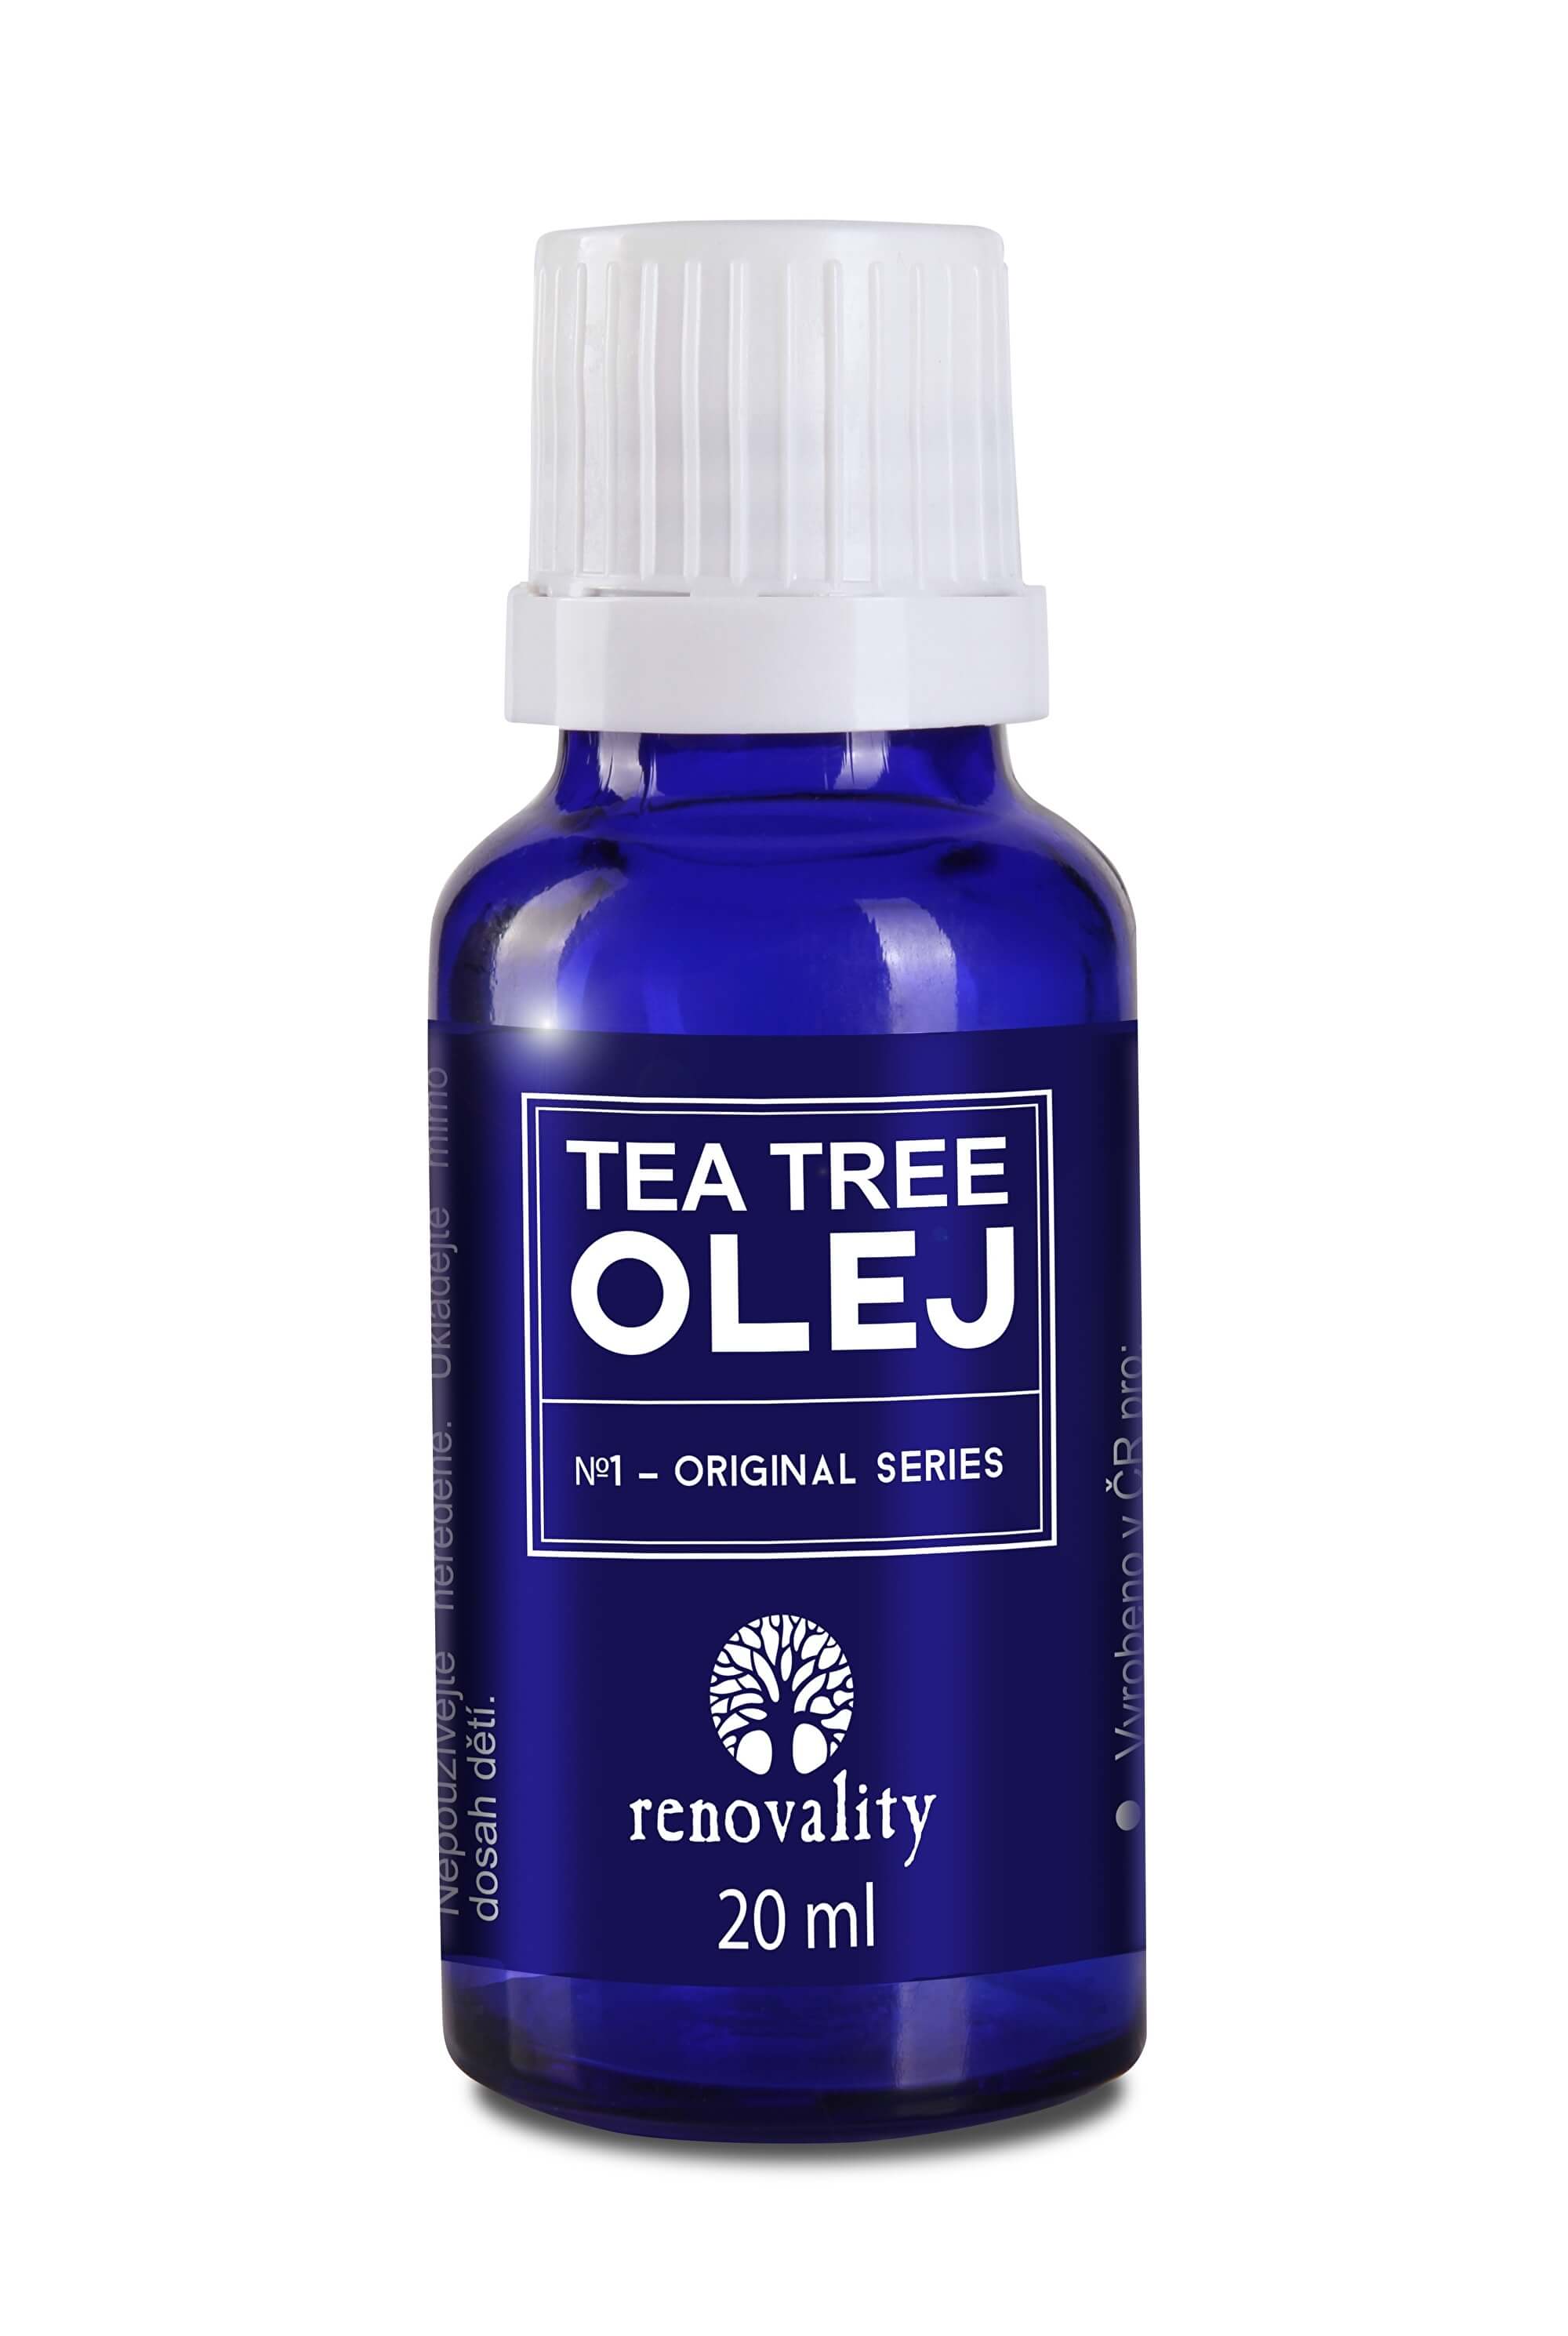 Renovality Tea Tree olej s kapátkem 20ml